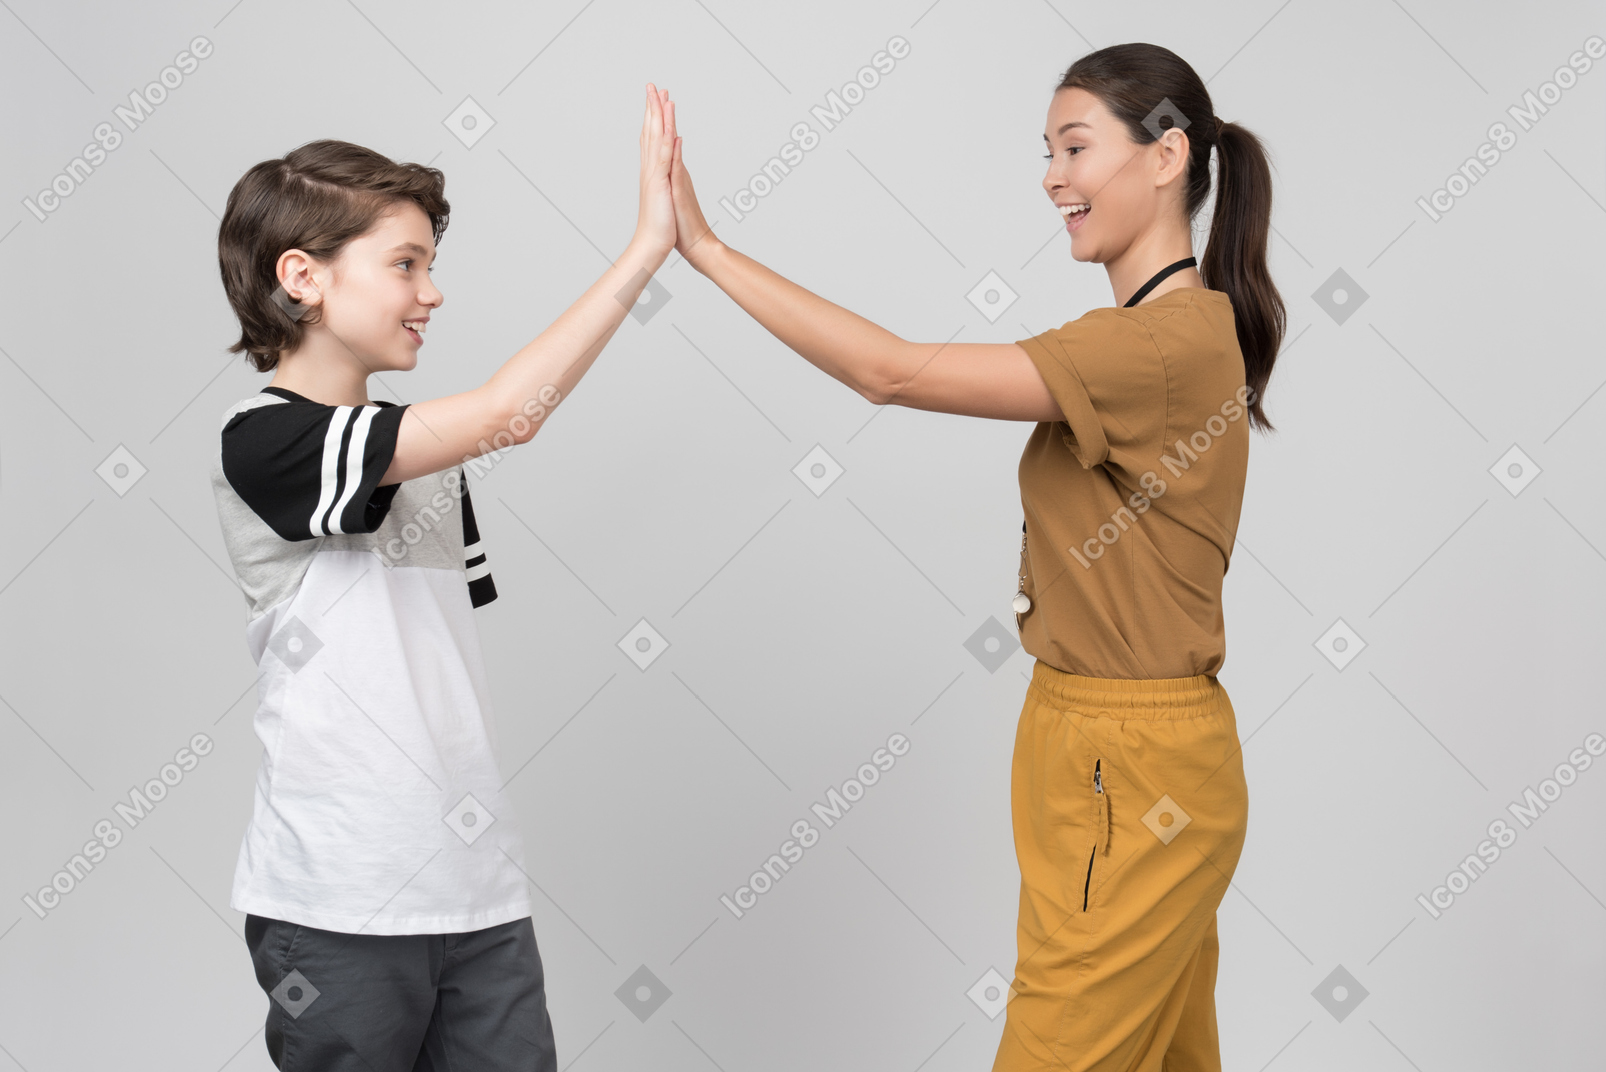 Pe professor e aluno batendo palmas de mãos juntas